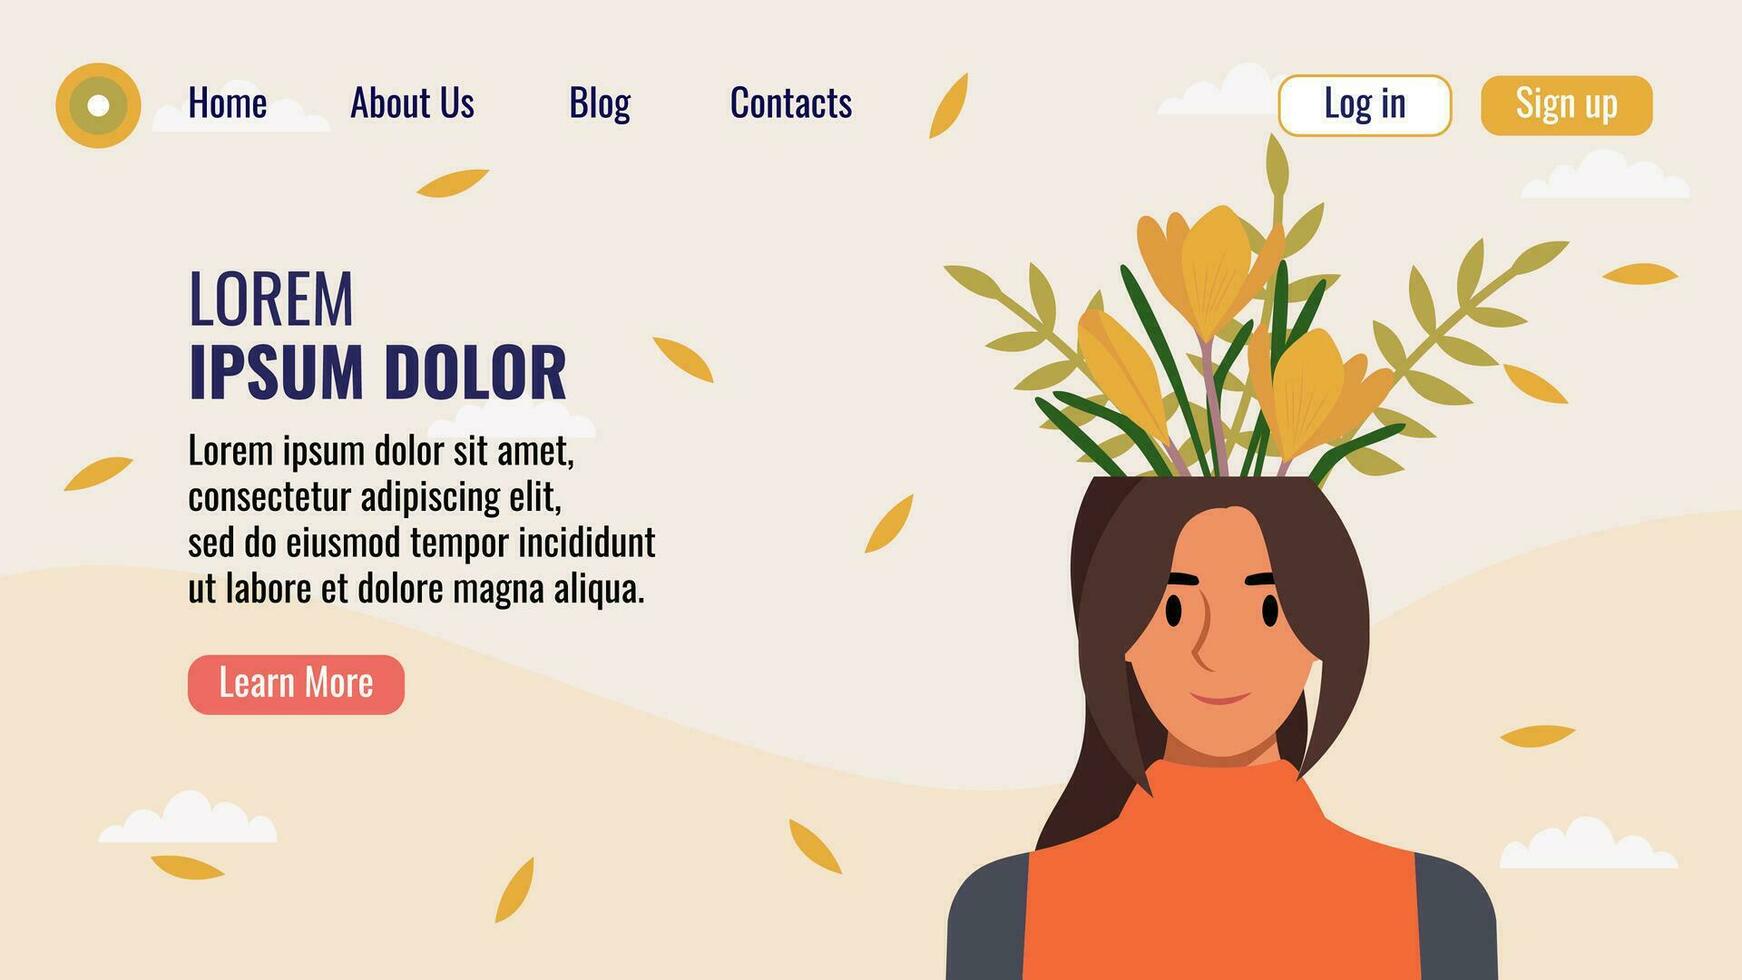 plano diseño sitio web aterrizaje página modelo con un retrato de un mujer con un ramo de flores de flores mental salud concepto. vector ilustración.